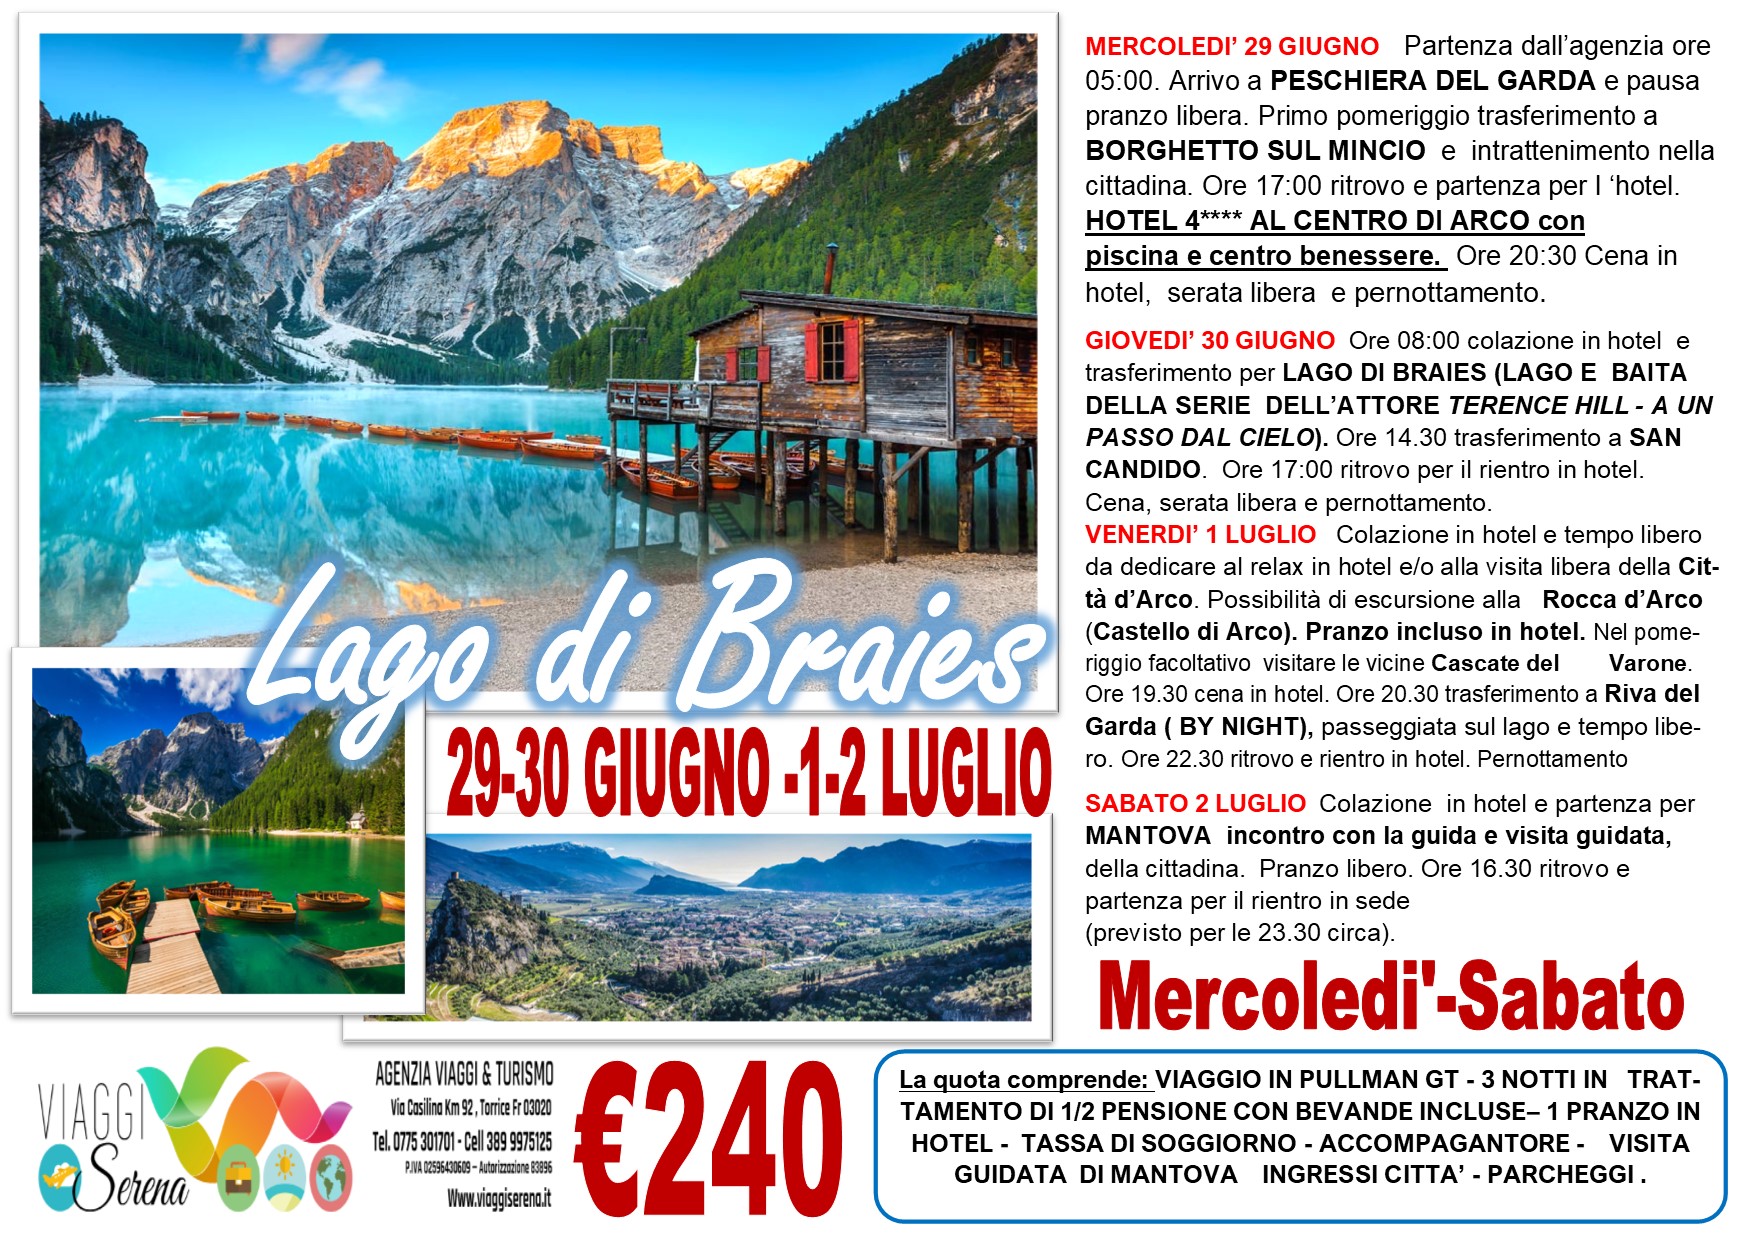 Viaggi di Gruppo: Lago di Braies, San Candido & Valeggio sul Mincio 29-30 Giugno e 1-2 Luglio €240,00